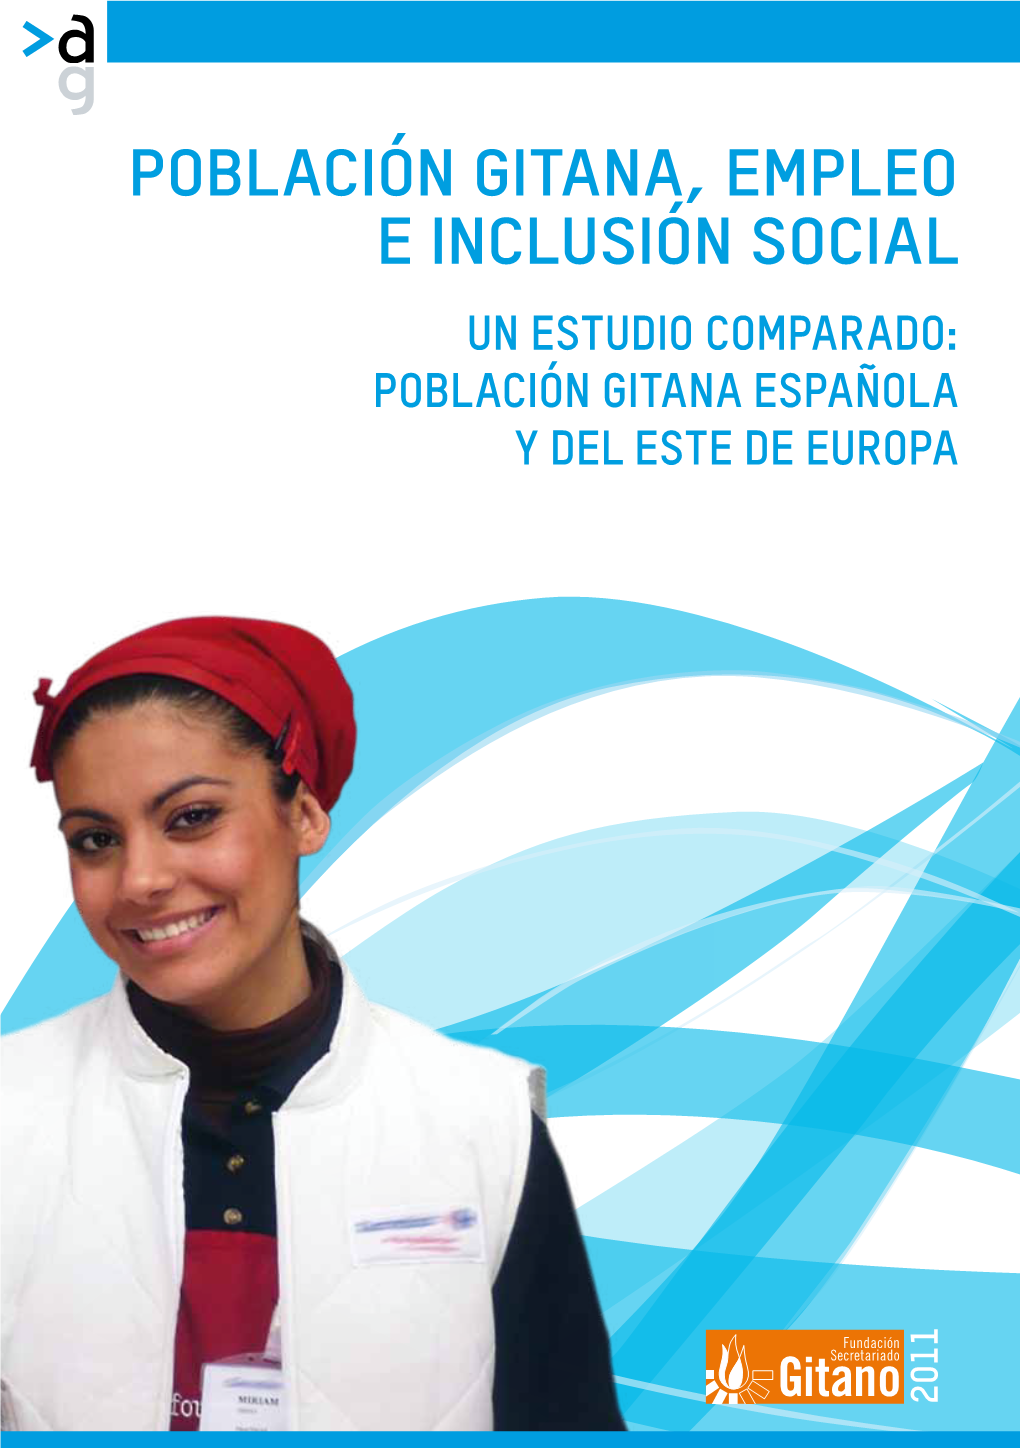 Población Gitana Española Y Del Este De Europa, Empleo E Inclusión Social